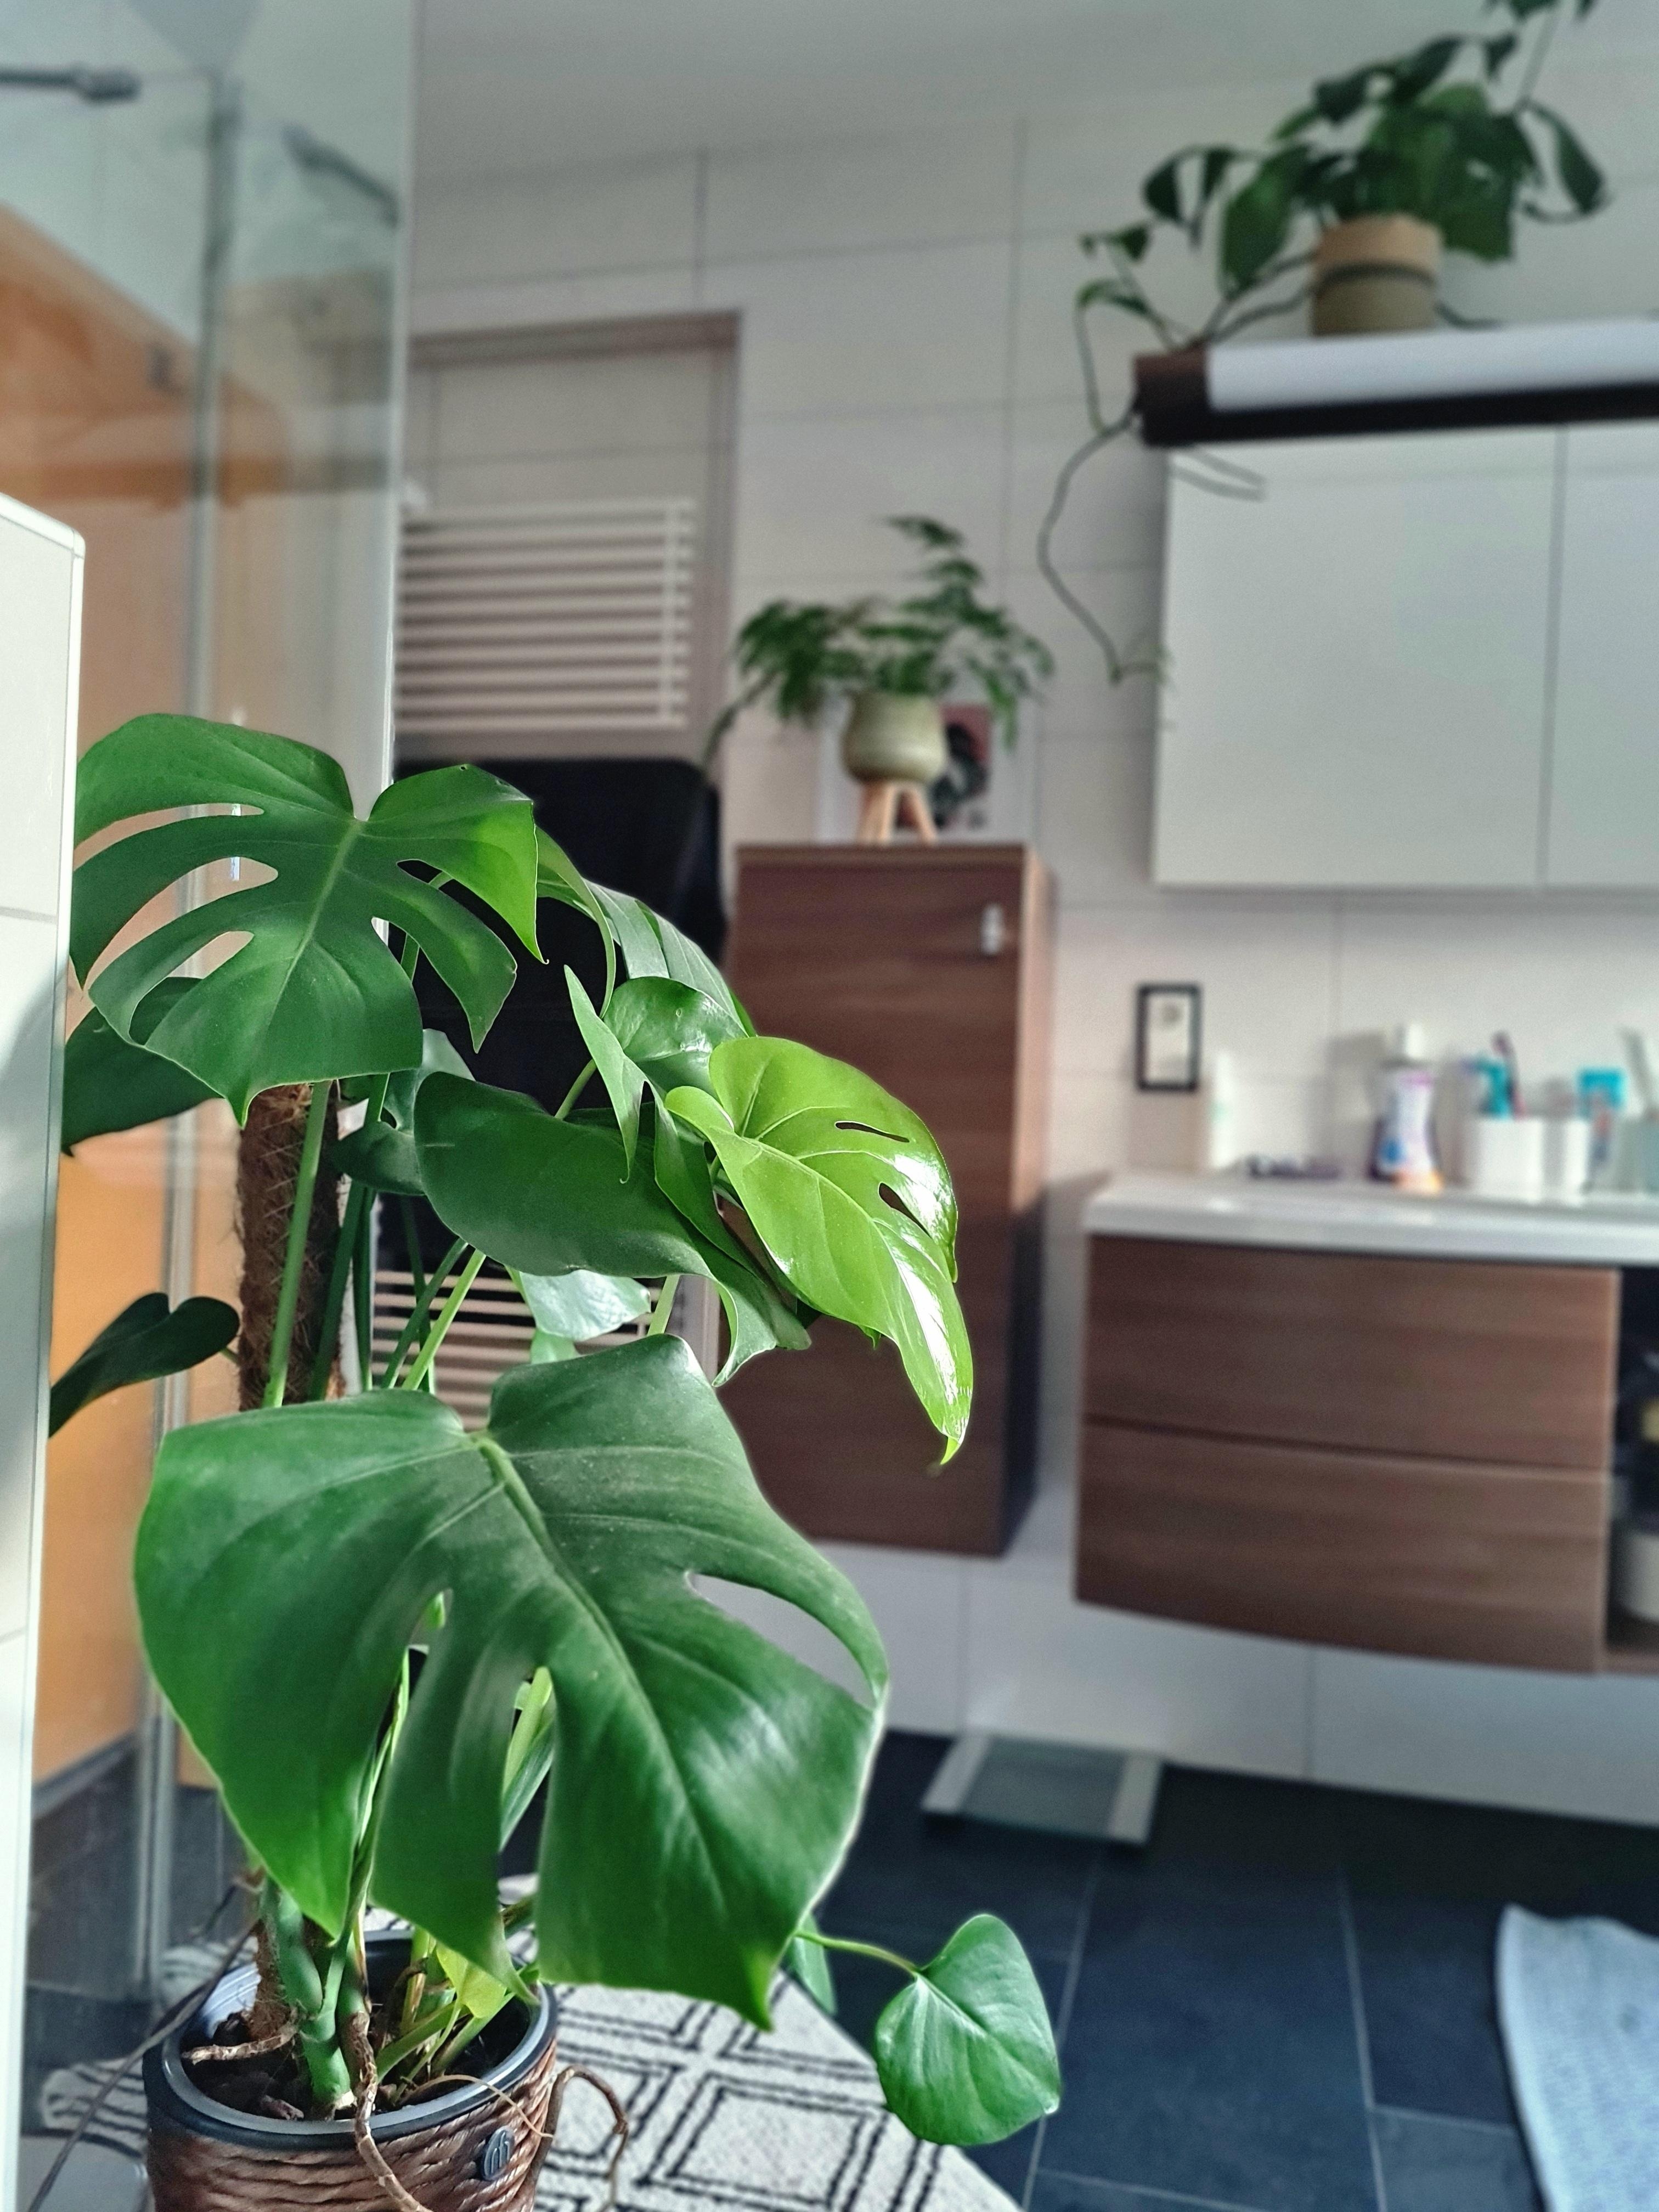 Dschungelvibes im Badezimmer 🪴🌴🌵
#Badezimmer #Pflanzen #Monstera #couchliebt #COUCHstyle 